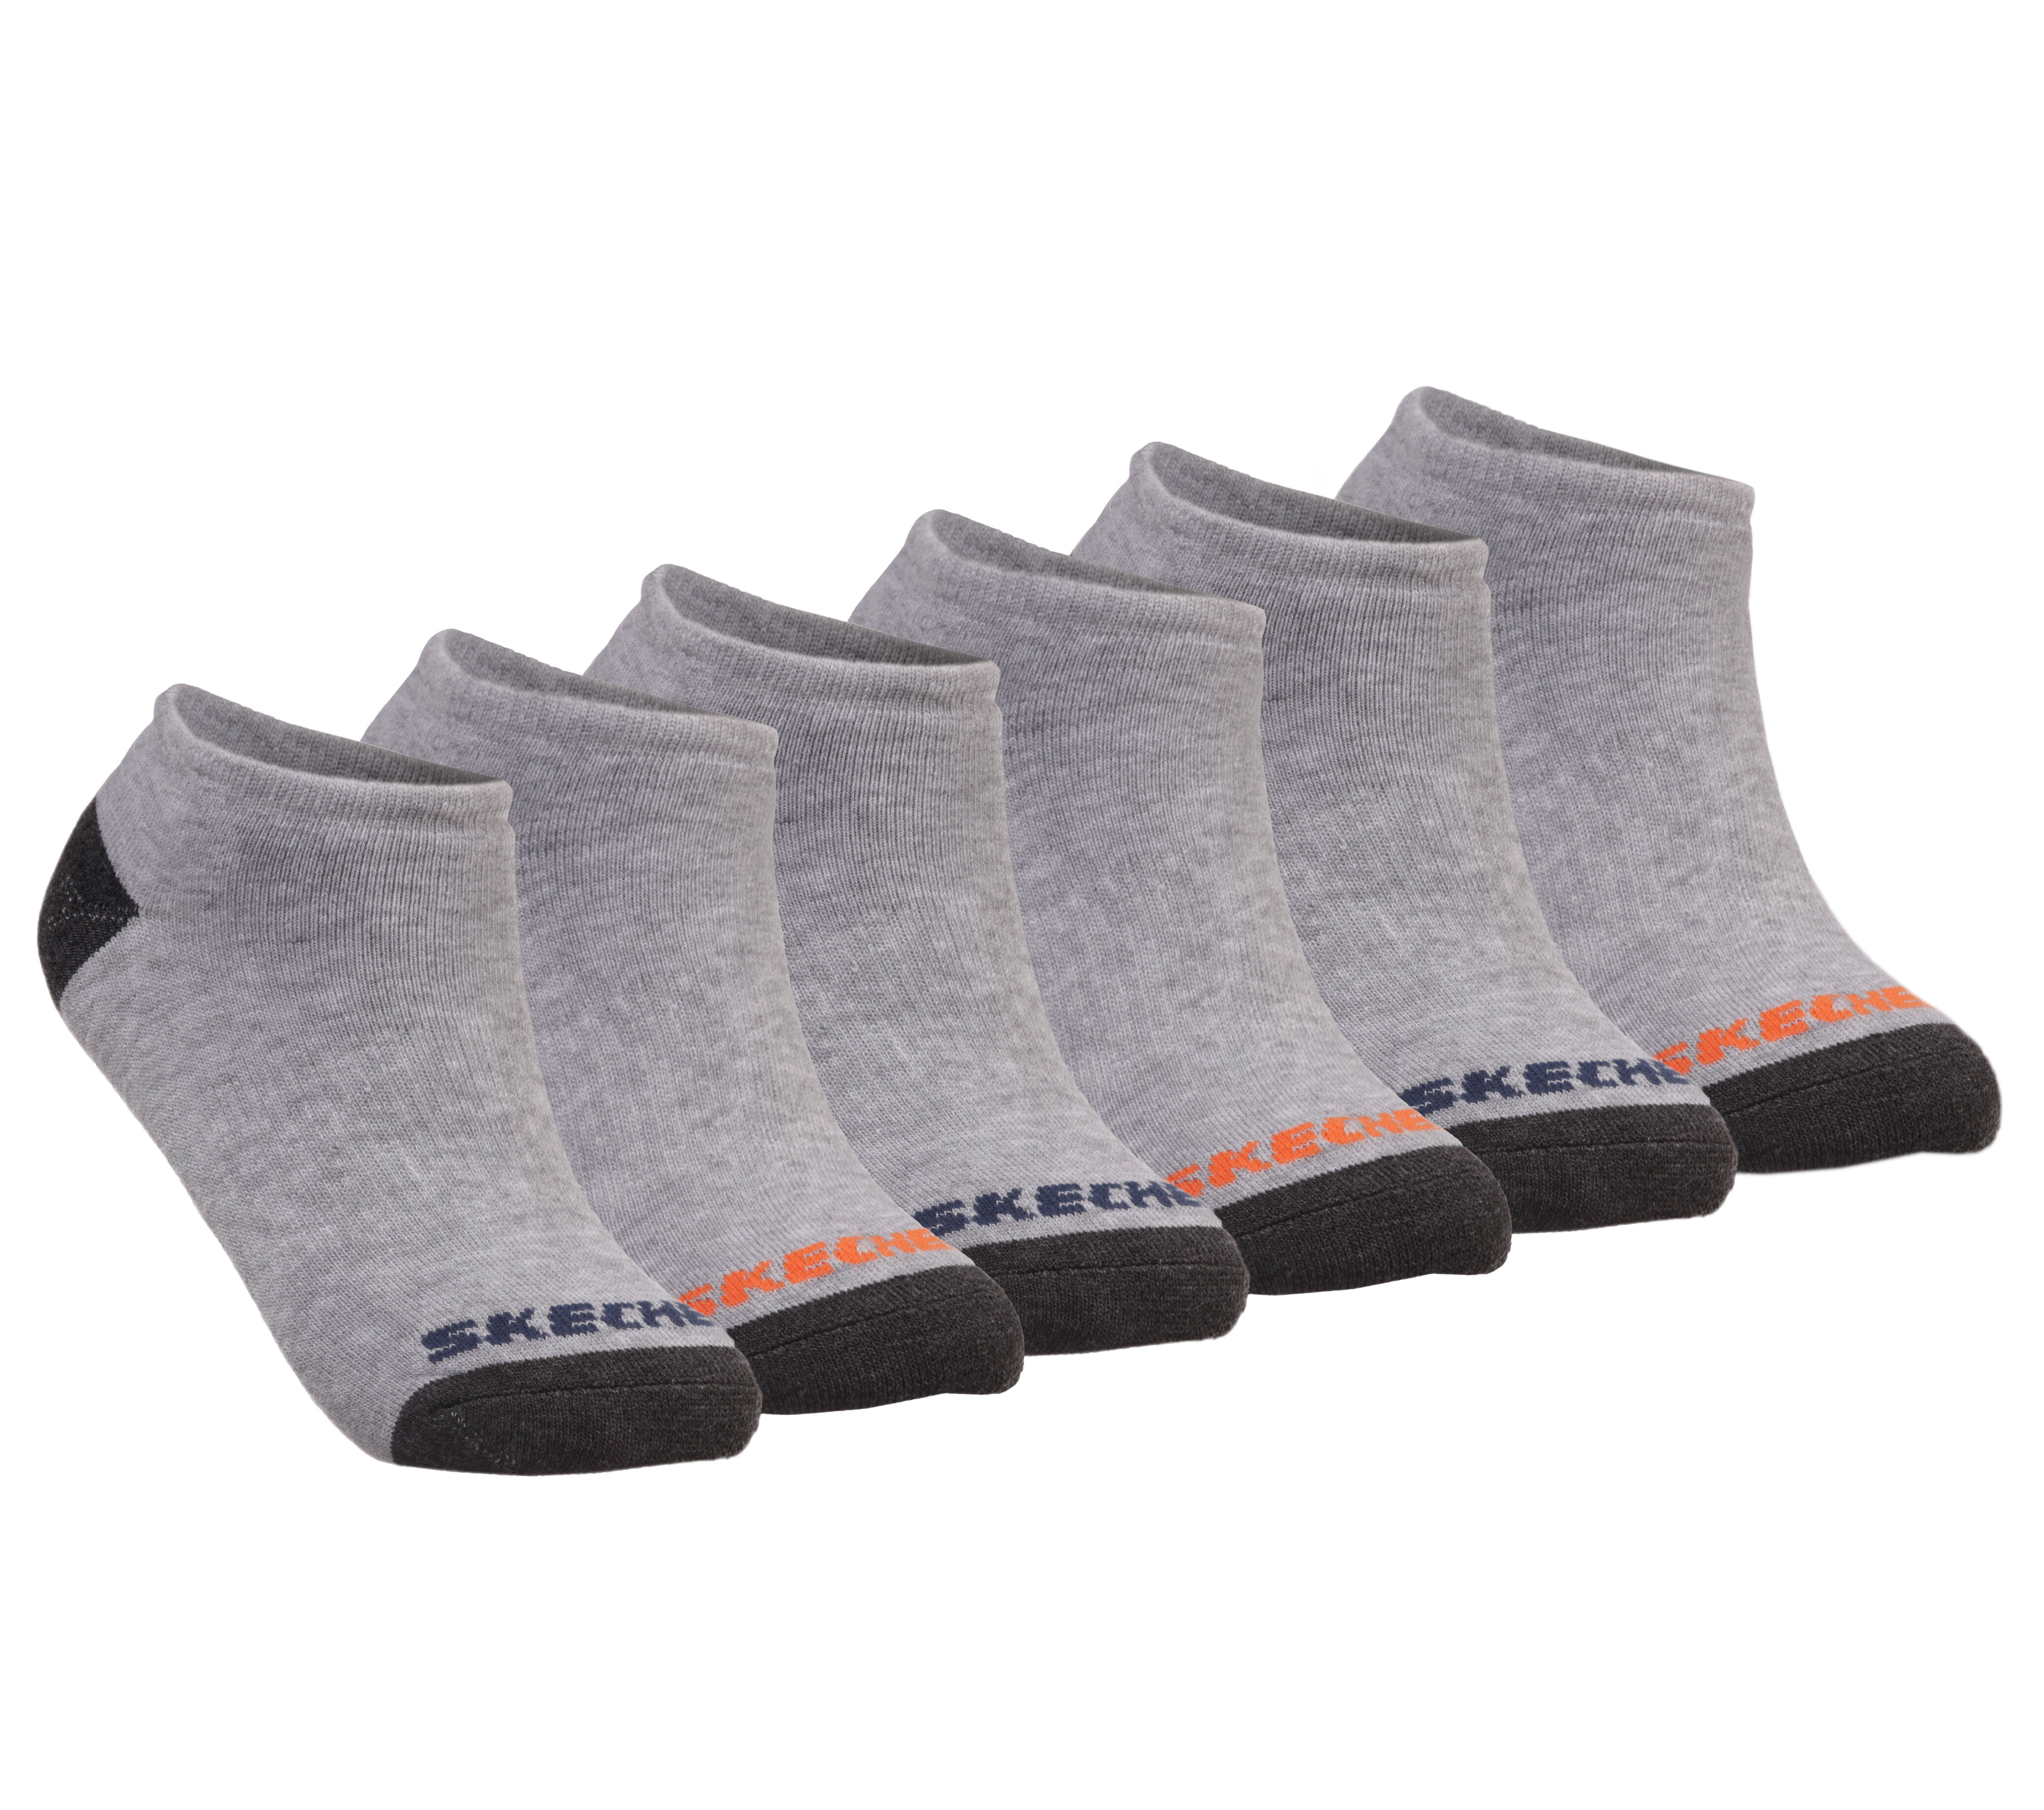 Walking Cut Low | Mall of Skechers America® 6 Socks Pack